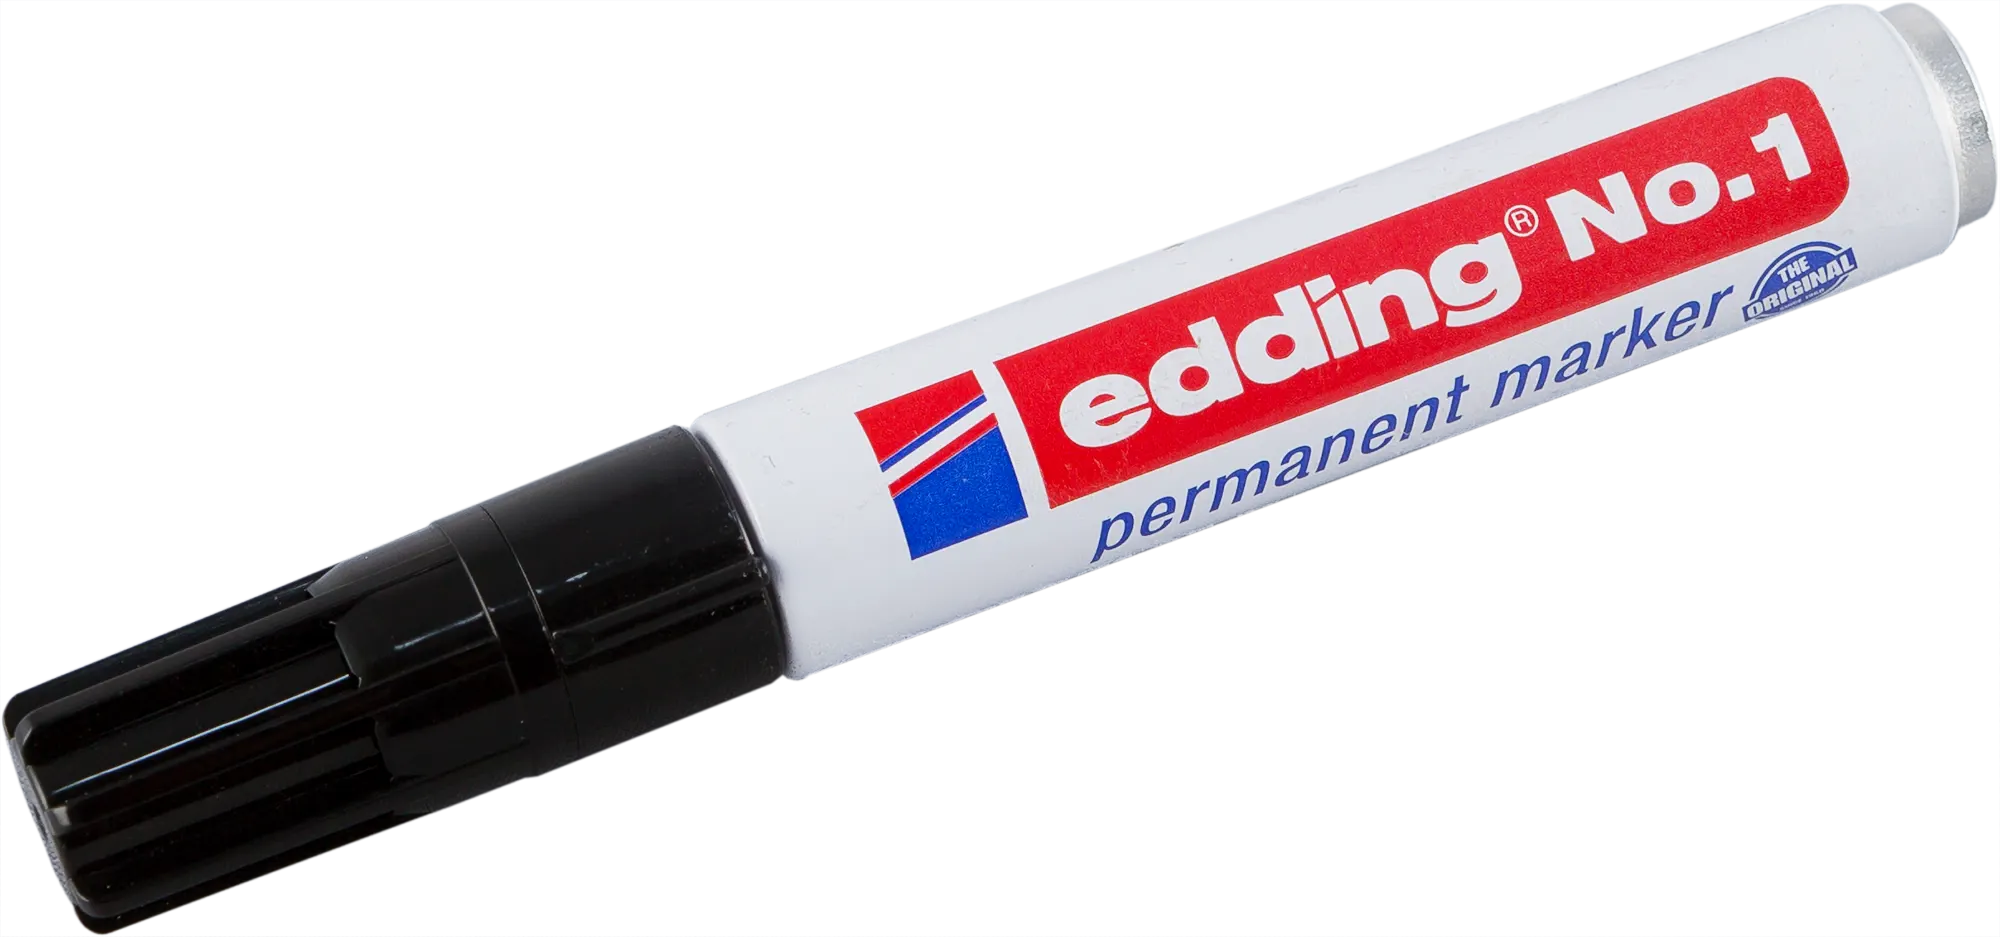 Маркер заправляемый Edding, чёрный 1-5 мм перманентный заправляемый маркер edding